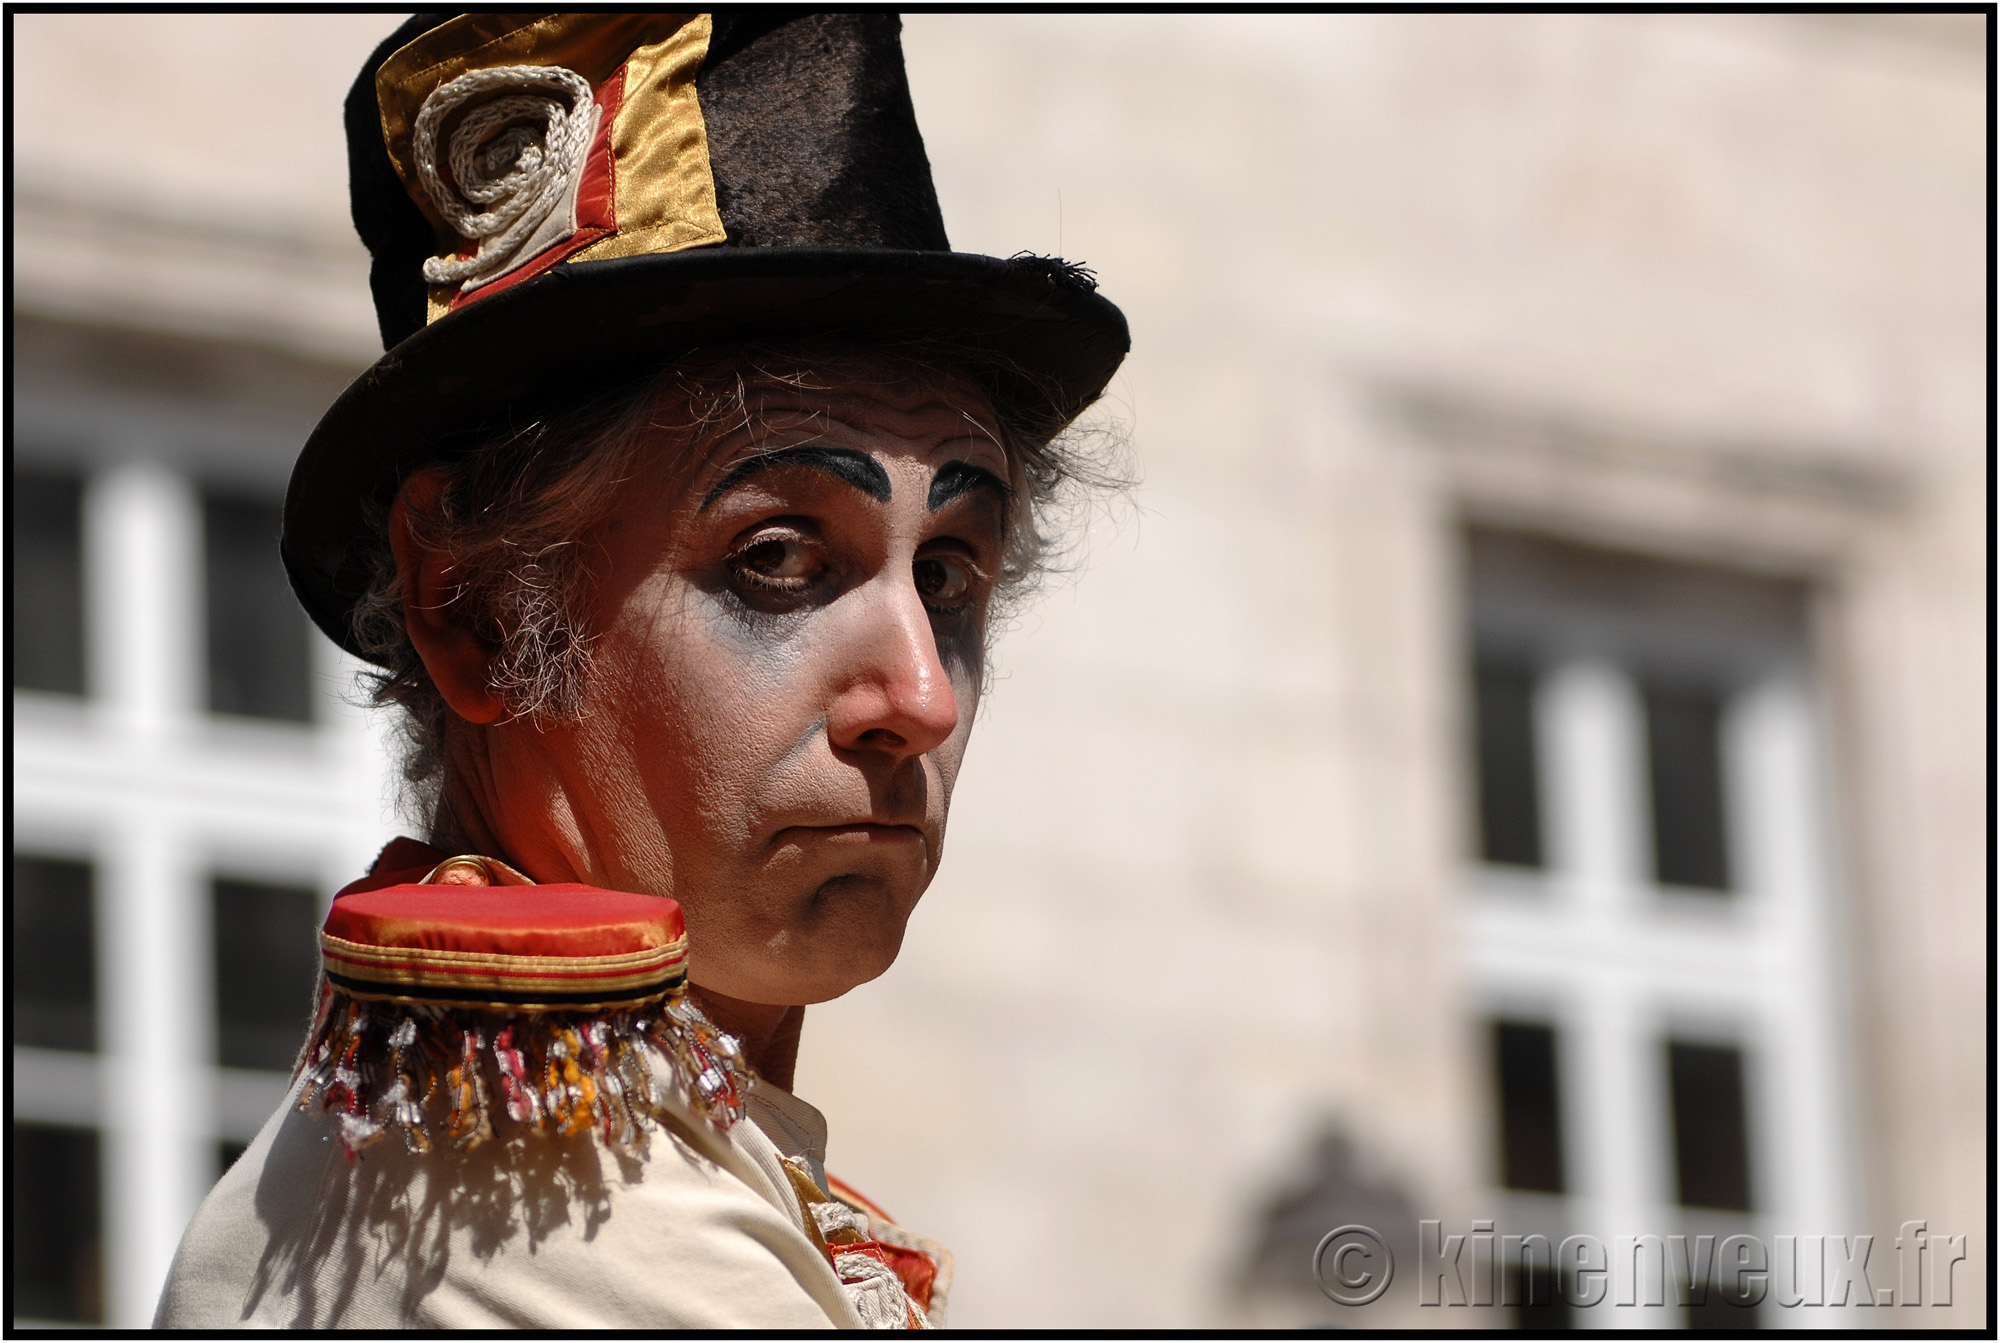 kinenveux_25_carnaval2015lr.jpg - Carnaval des Enfants 2015 - La Rochelle